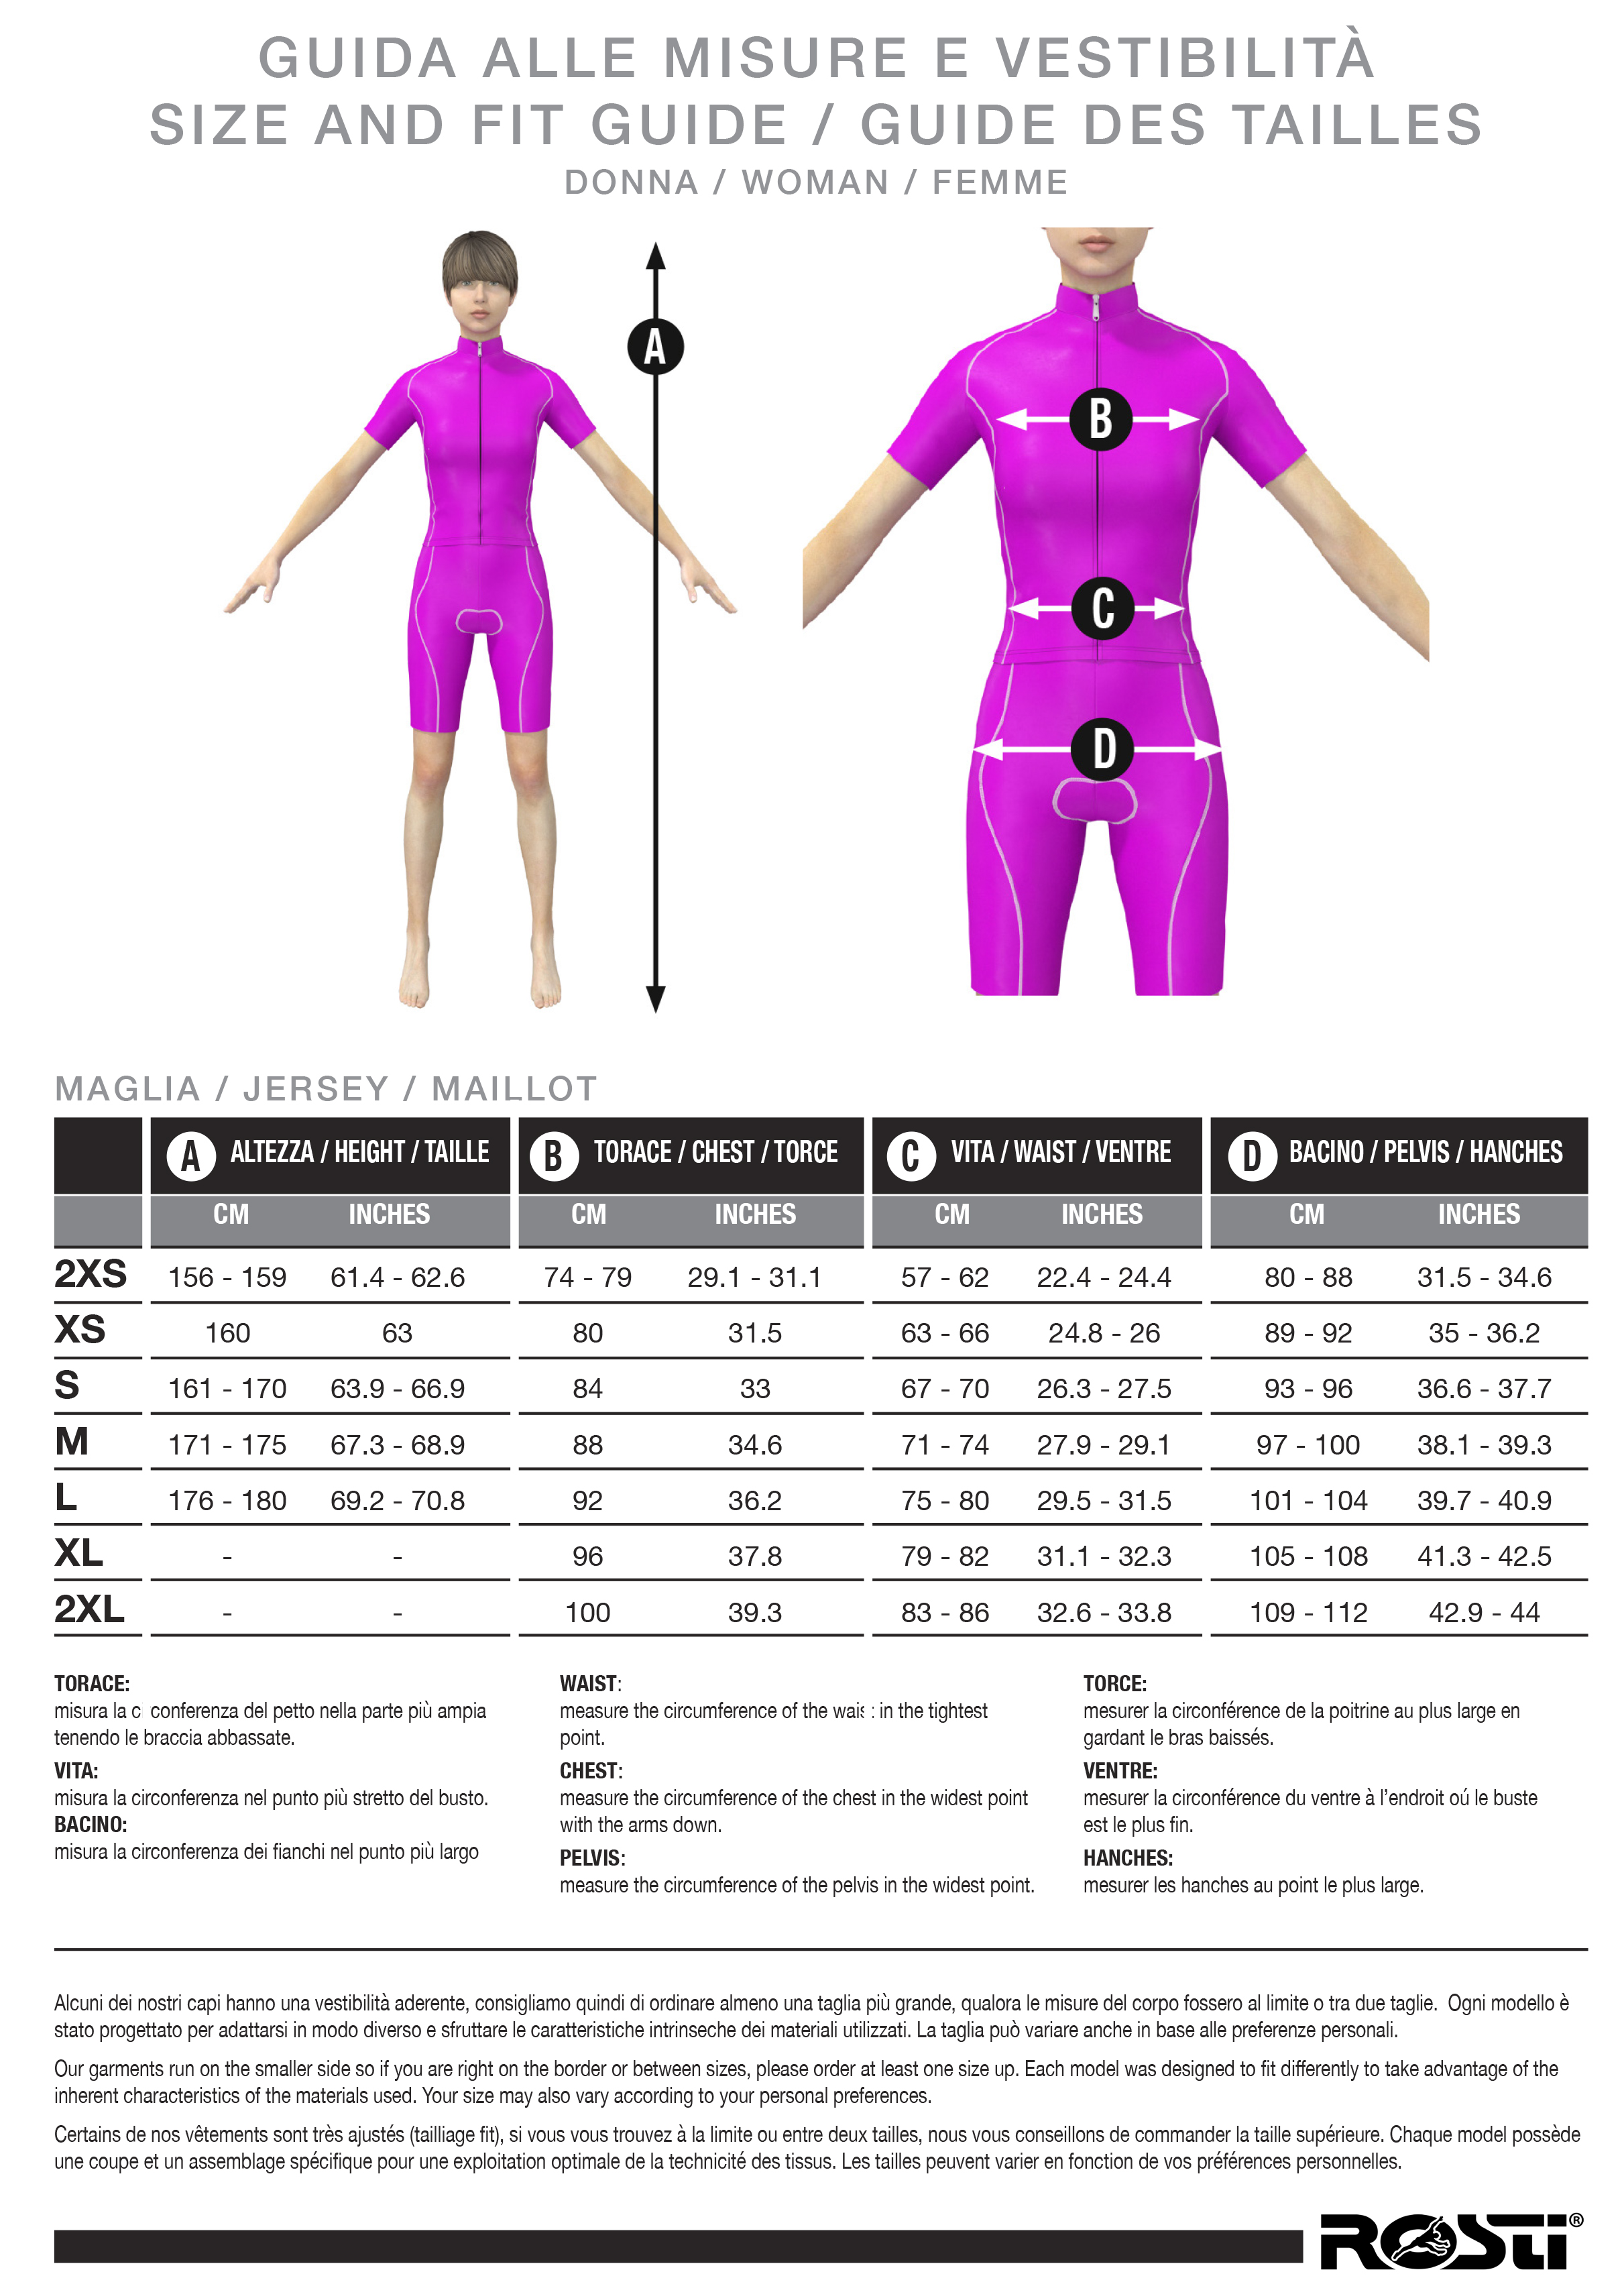 Women's swimsuit size guide